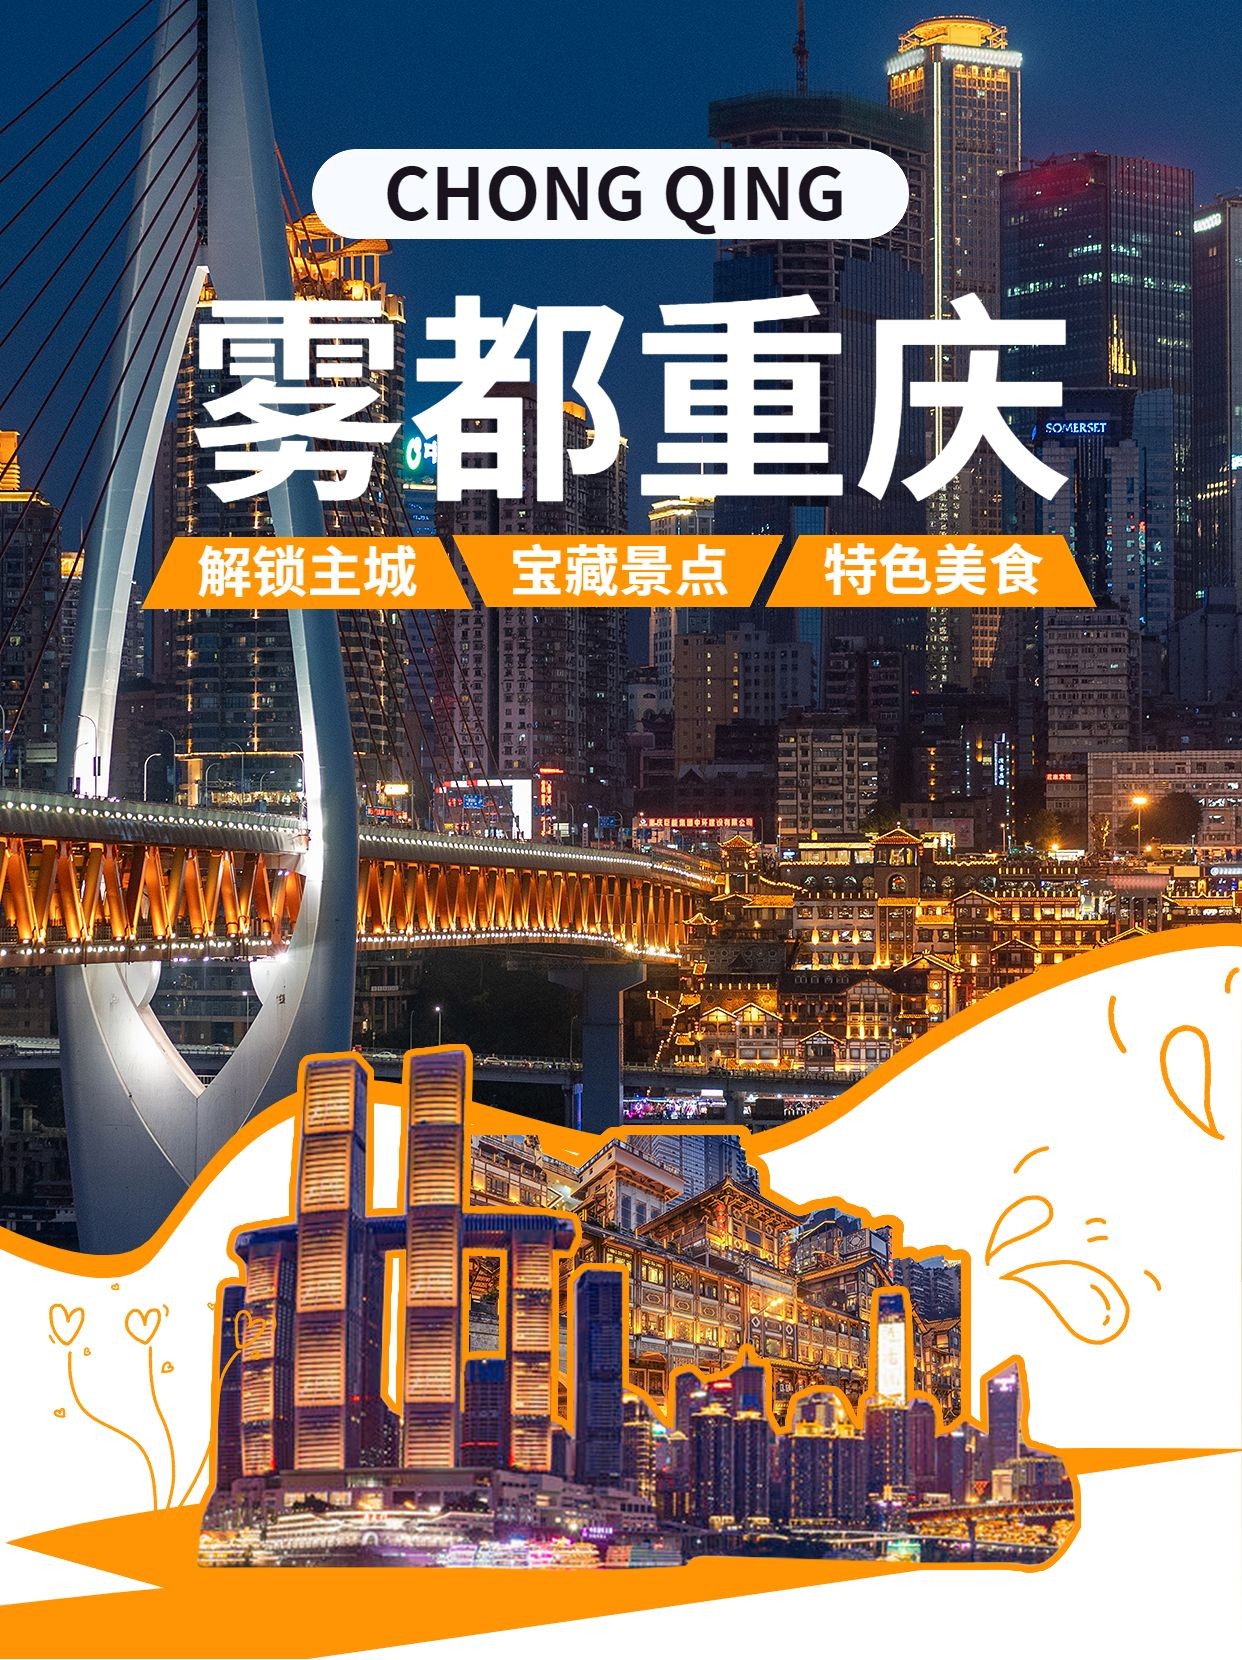 旅游出重庆景区景点推荐微信图片消息配图预览效果